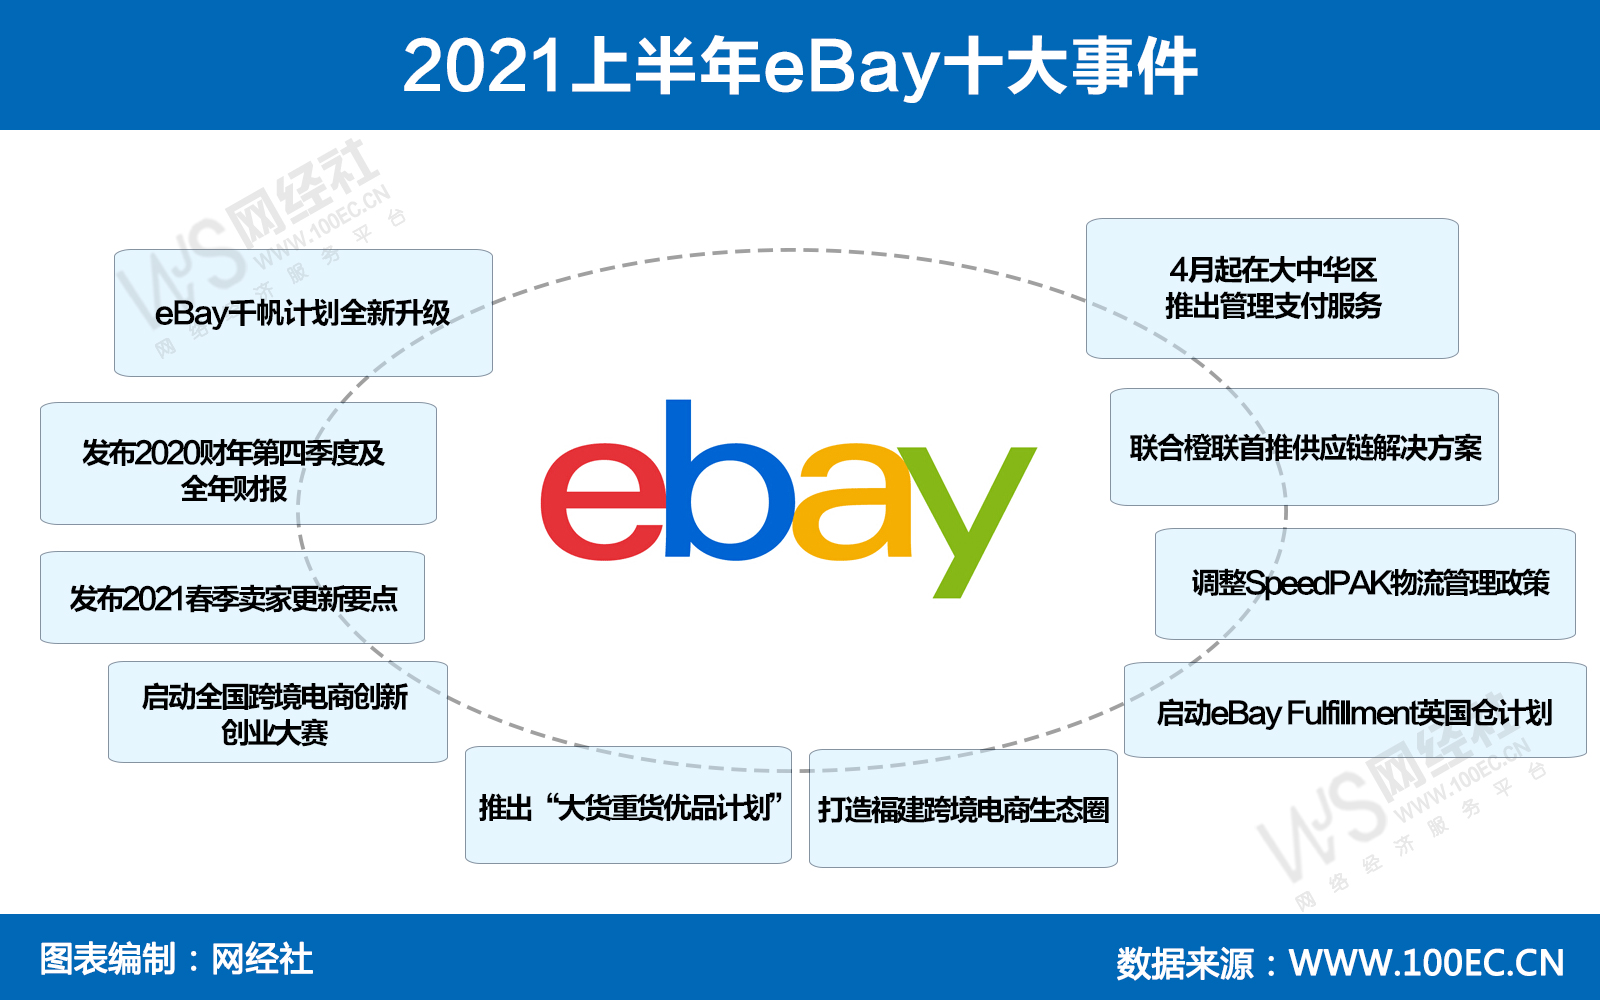 2021上半年eBay十大事件(1).jpg